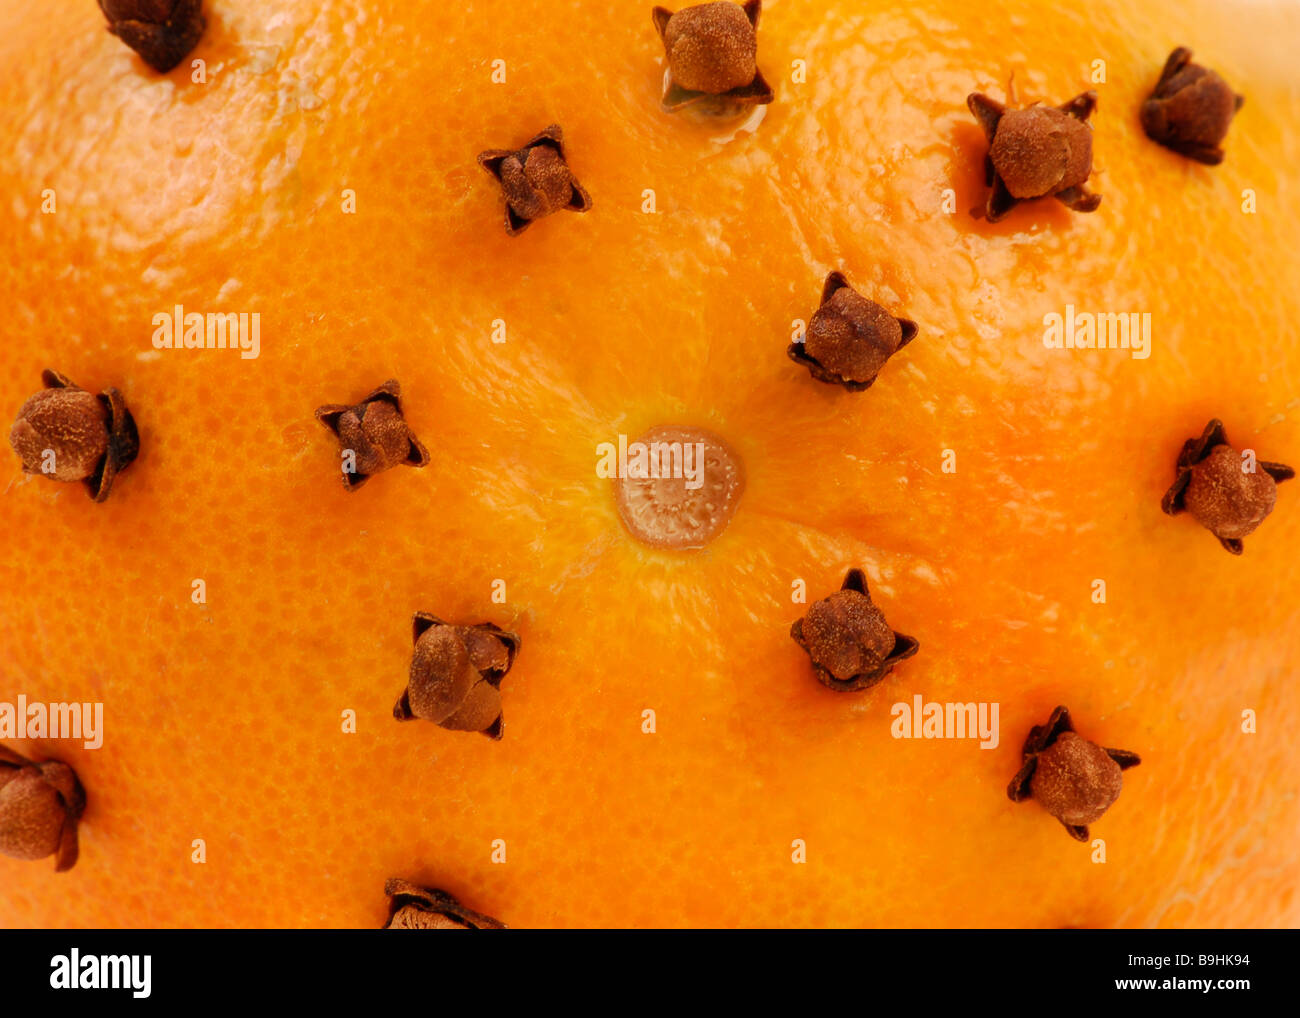 Cáscara de naranja con clavos clavos de olor aromático, decoración navideña  Fotografía de stock - Alamy